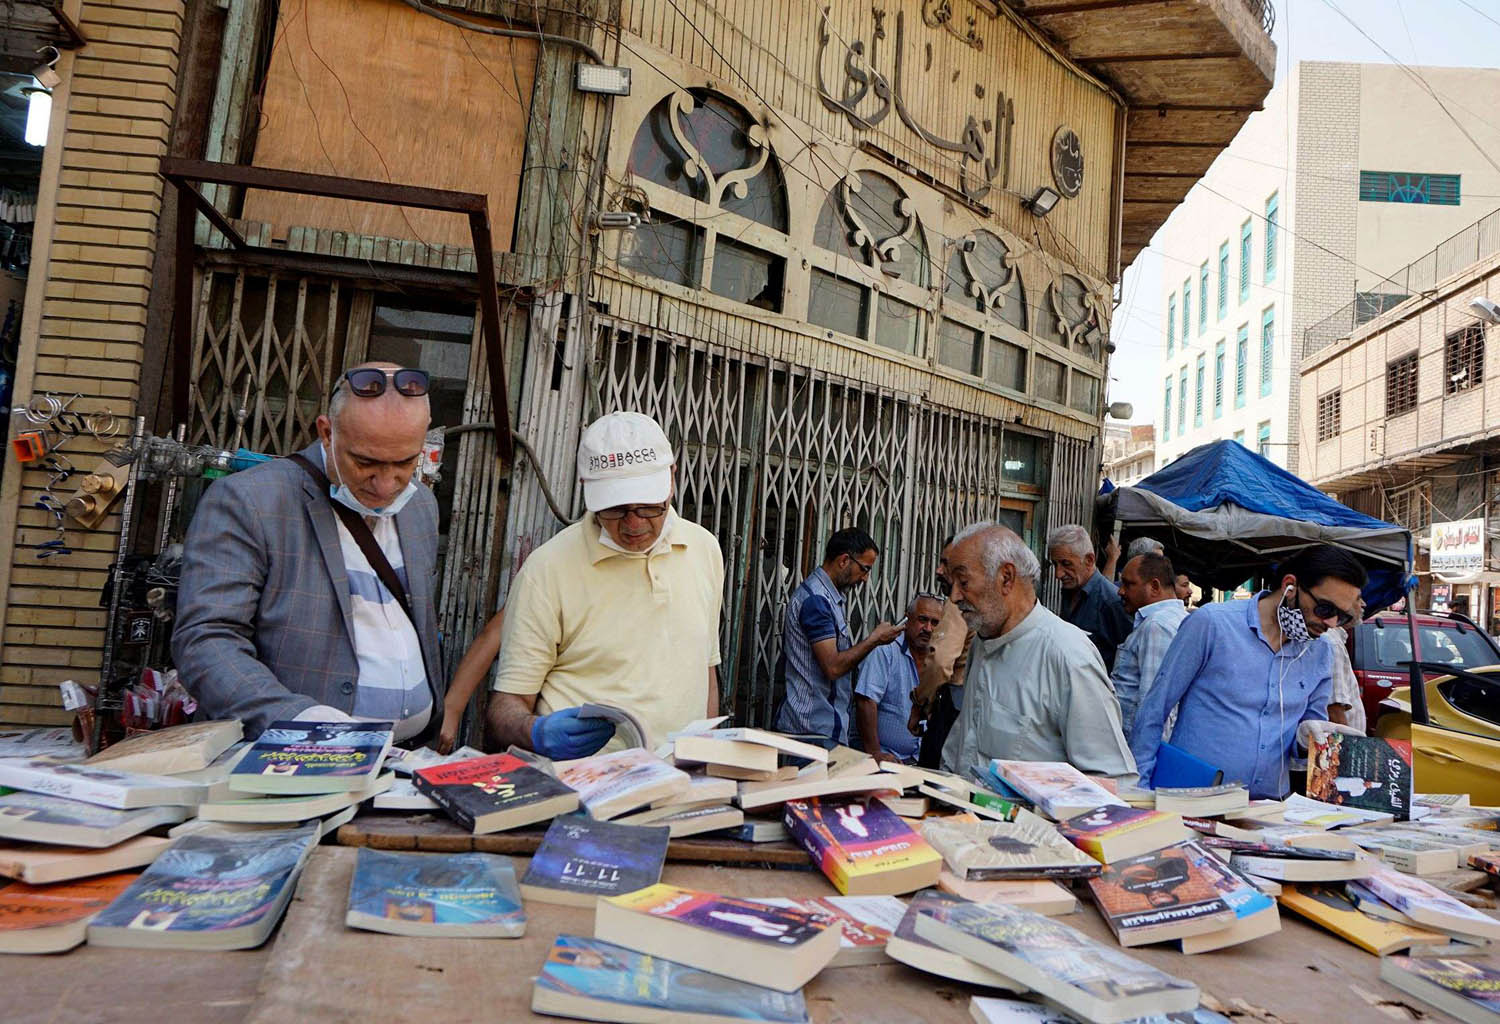 شارع المتنبي - شارع الثقافة والكتب في بغداد